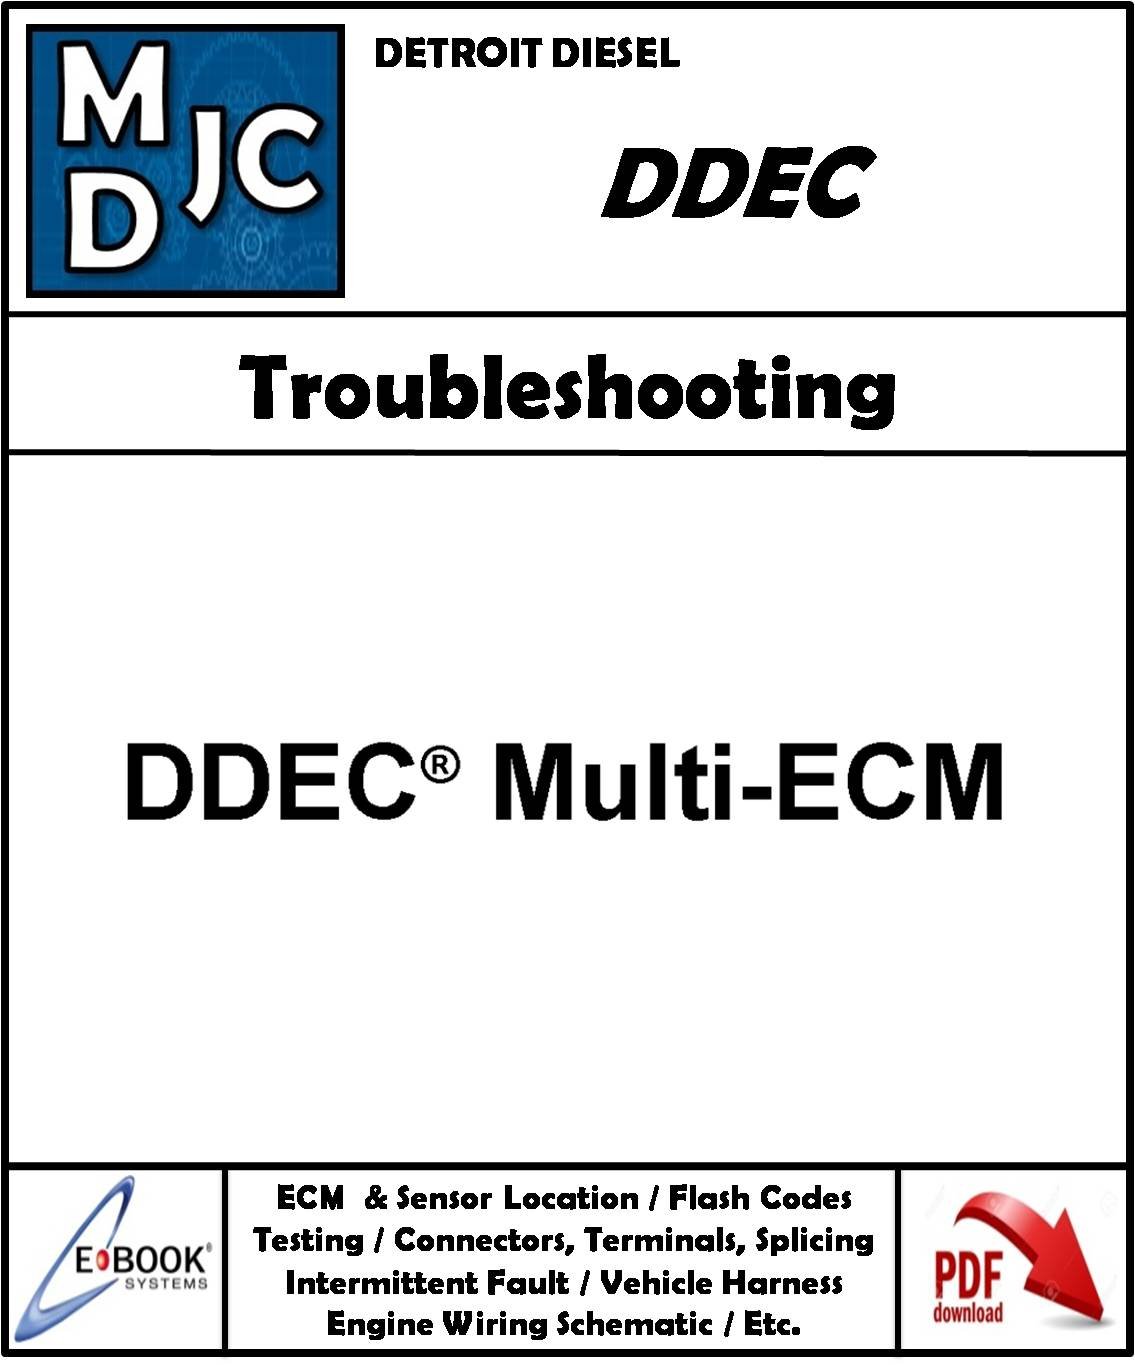 Detroit Diesel - DDEC  Multi-ECM